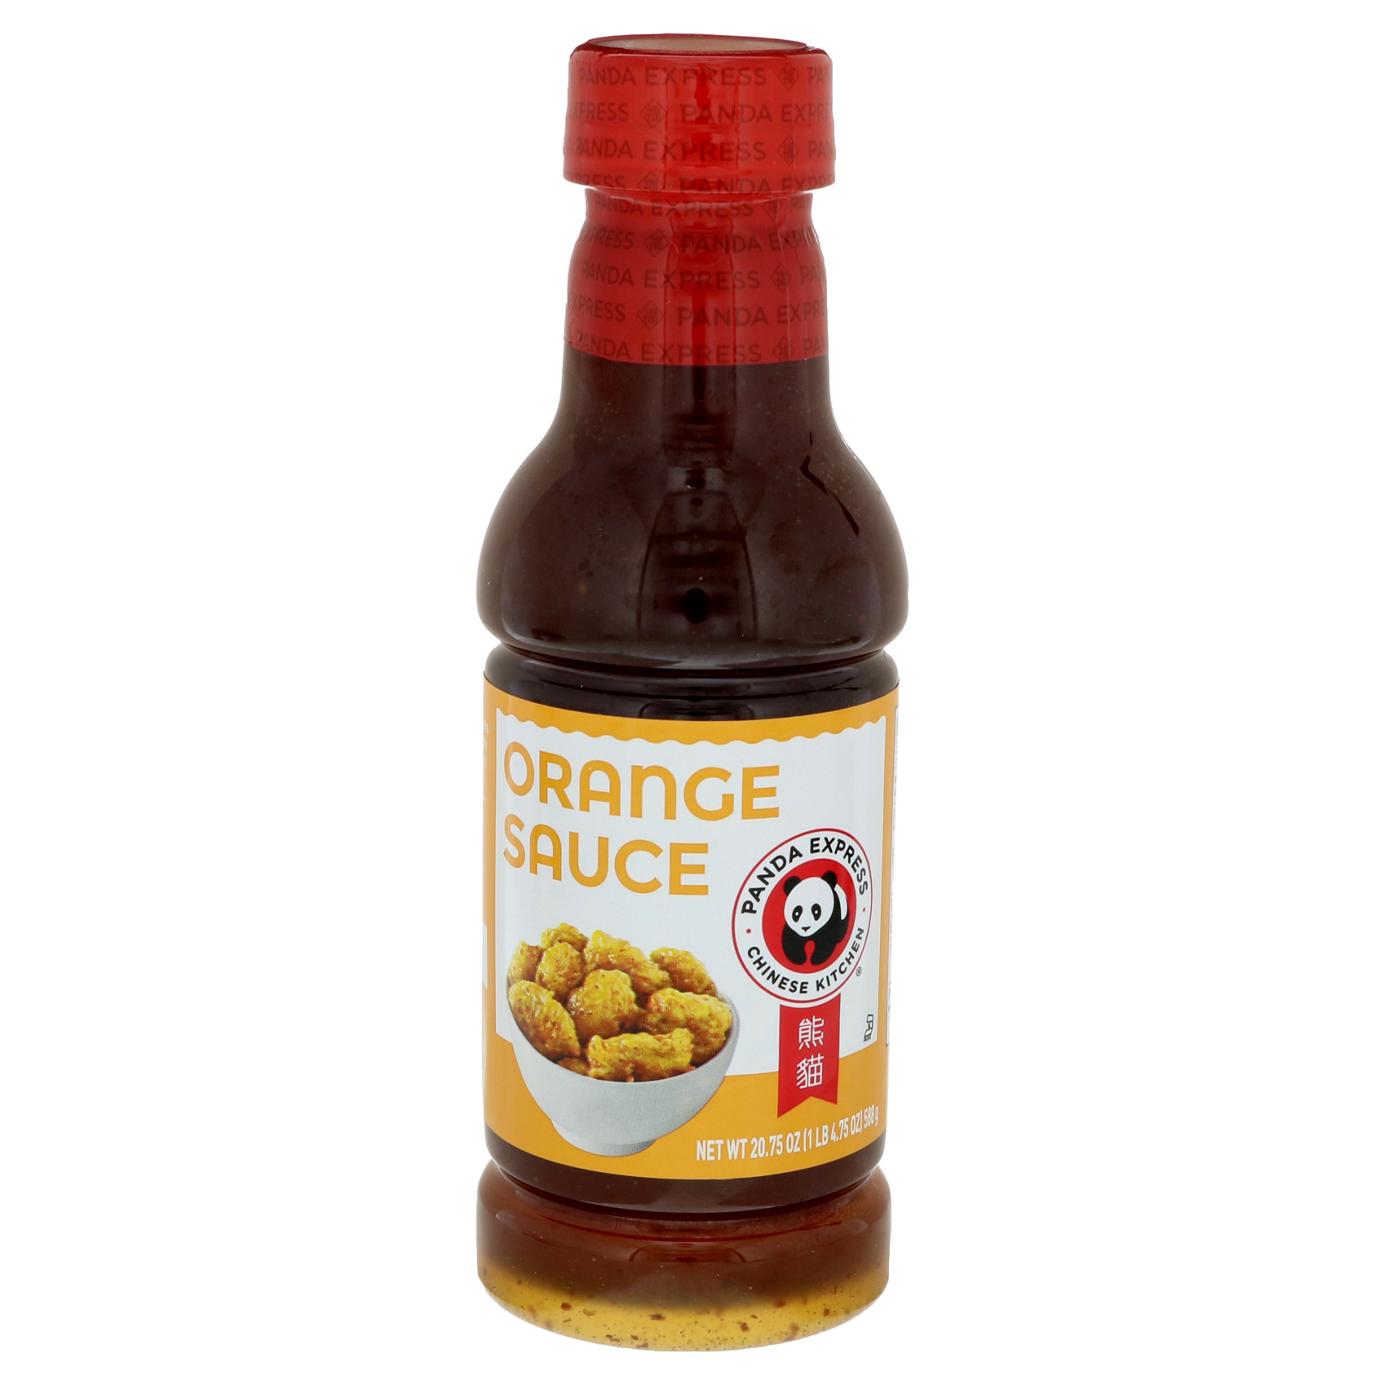 Panda Express Sauce, Orange - Shop Specialty Sauces at H-E-B